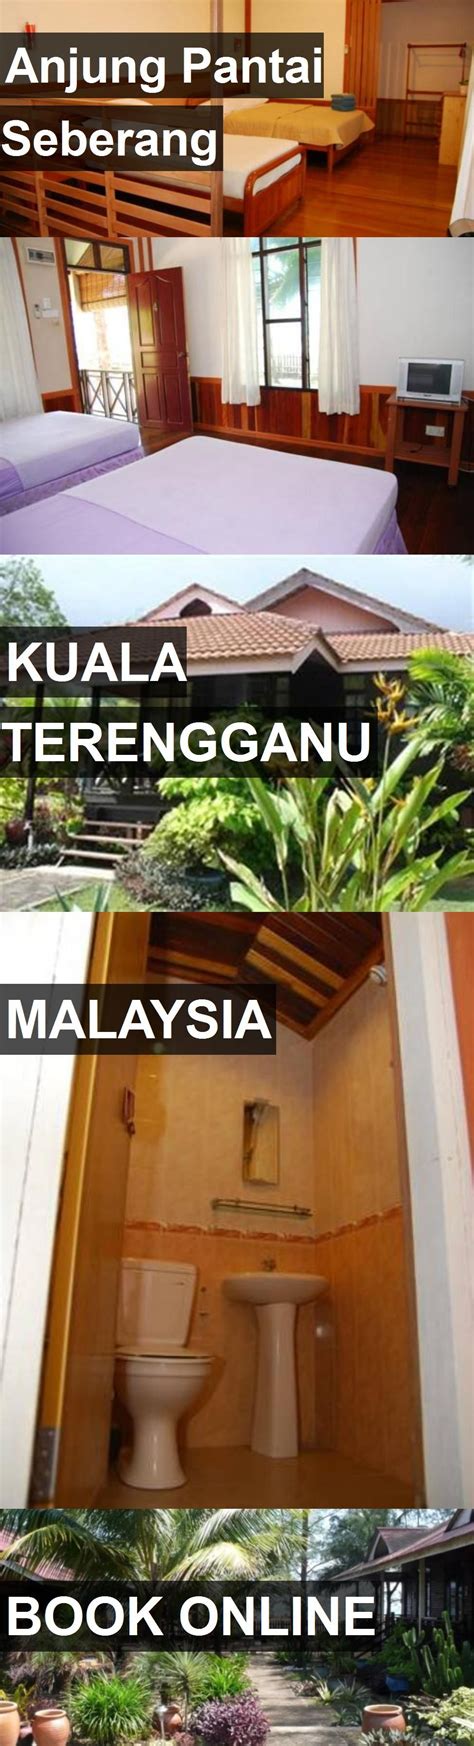 81 opiniones de hoteles y 85 fotos de viajeros, y los precios más baratos para resorts en kuala terengganu, terengganu, malasia. Hotel Anjung Pantai Seberang in Kuala Terengganu, Malaysia ...